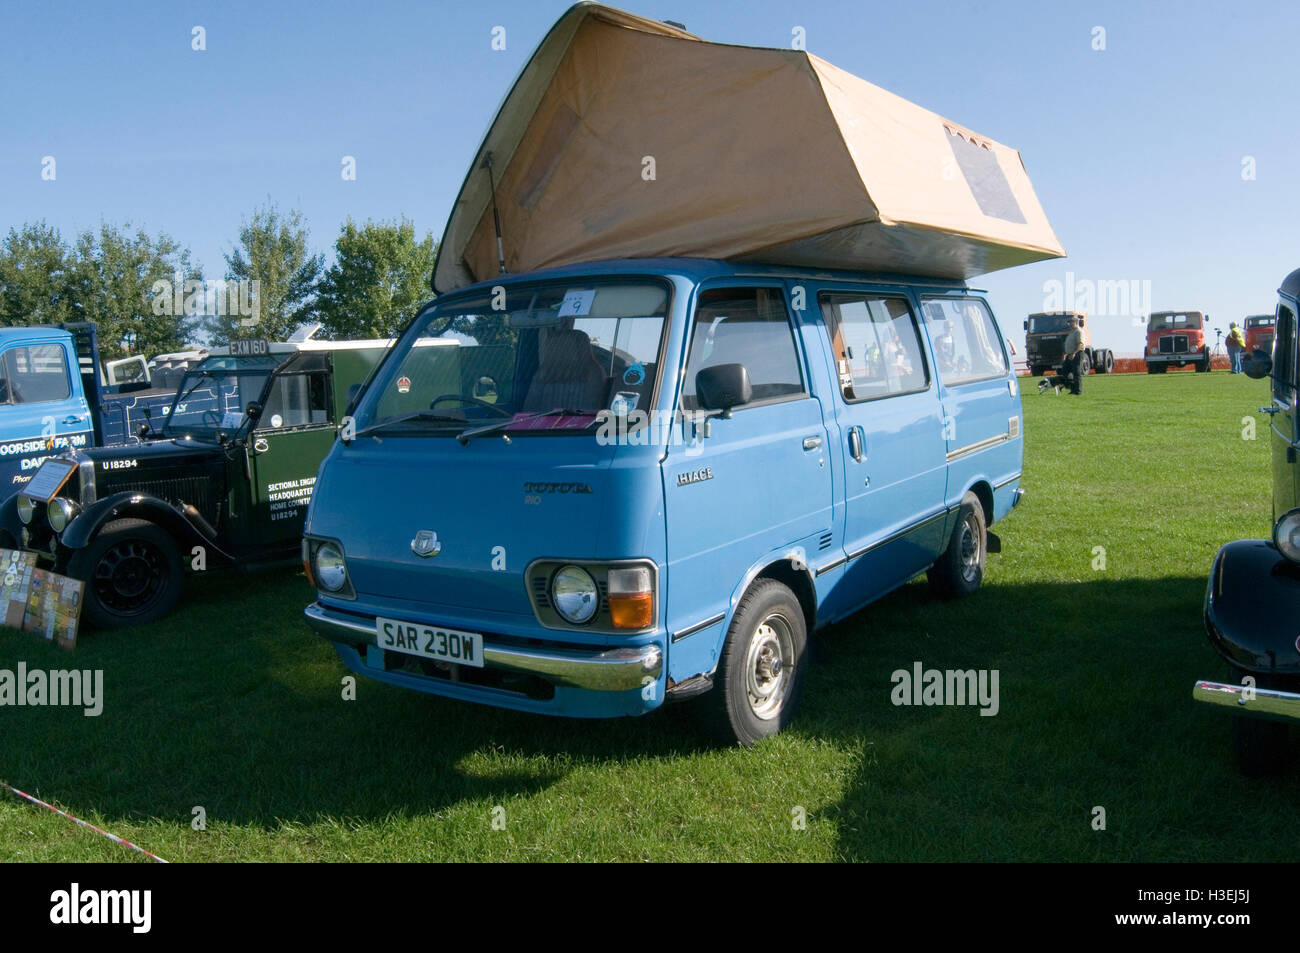 toyota camper vans for sale uk